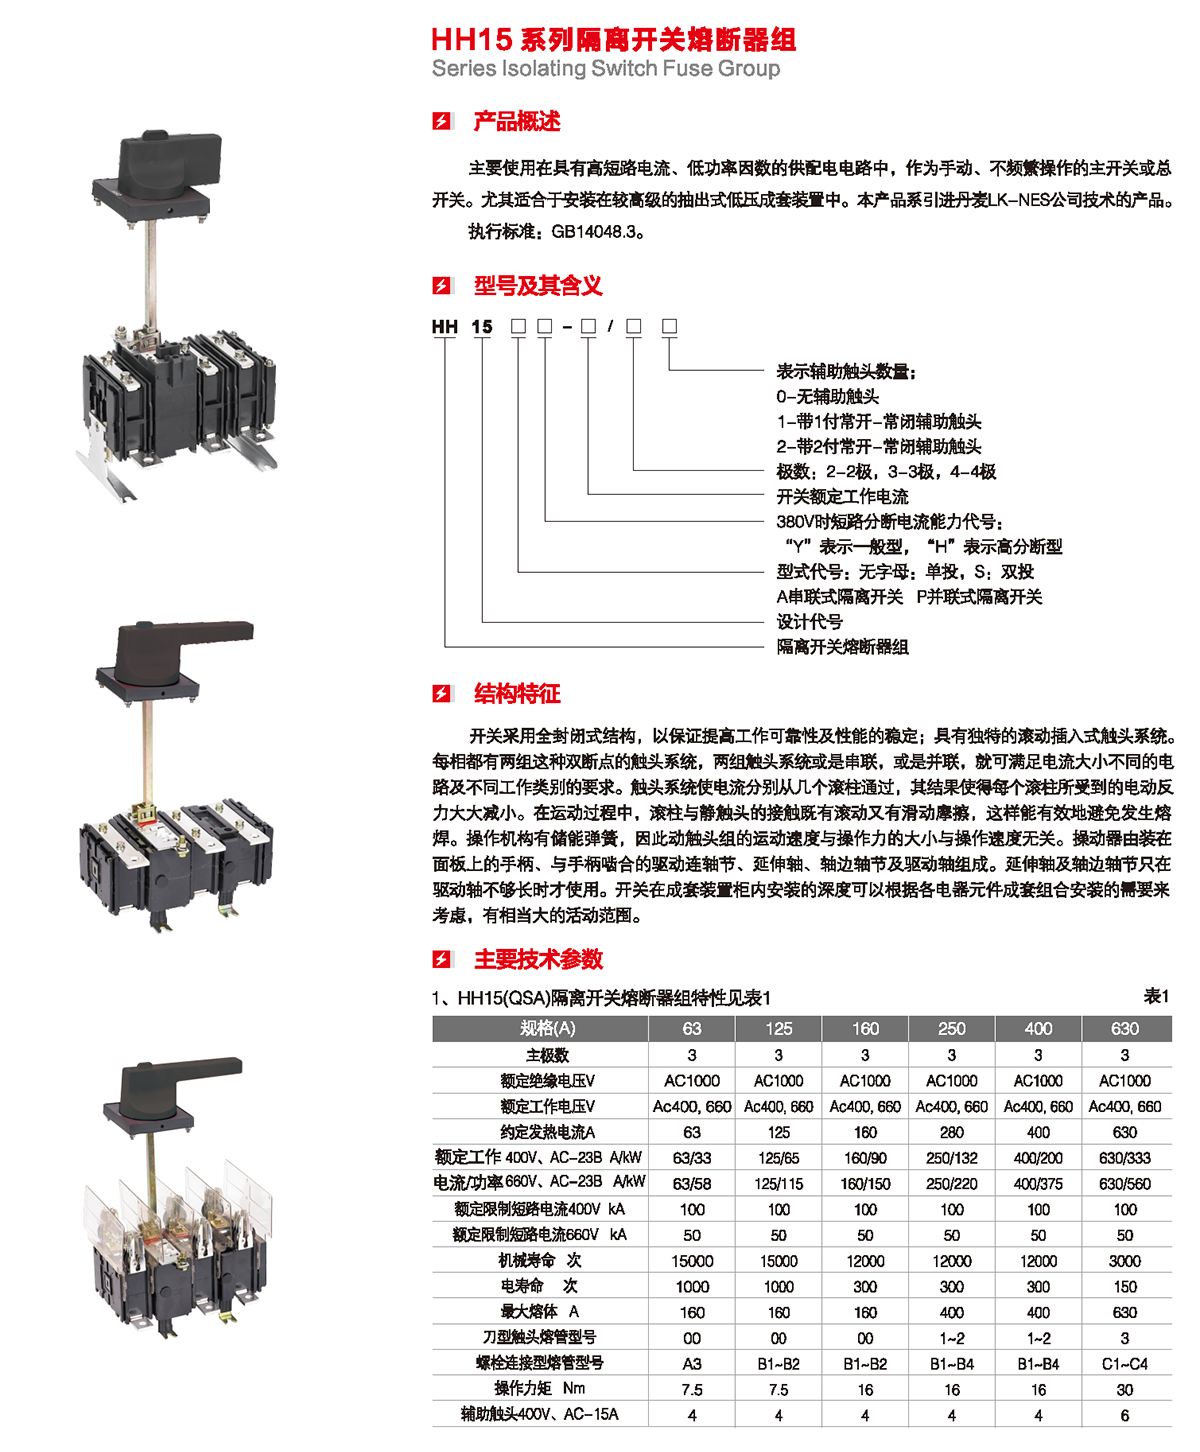 HH15系列隔離開關熔斷器組產品概述、型號含義、結構特征、技術參數